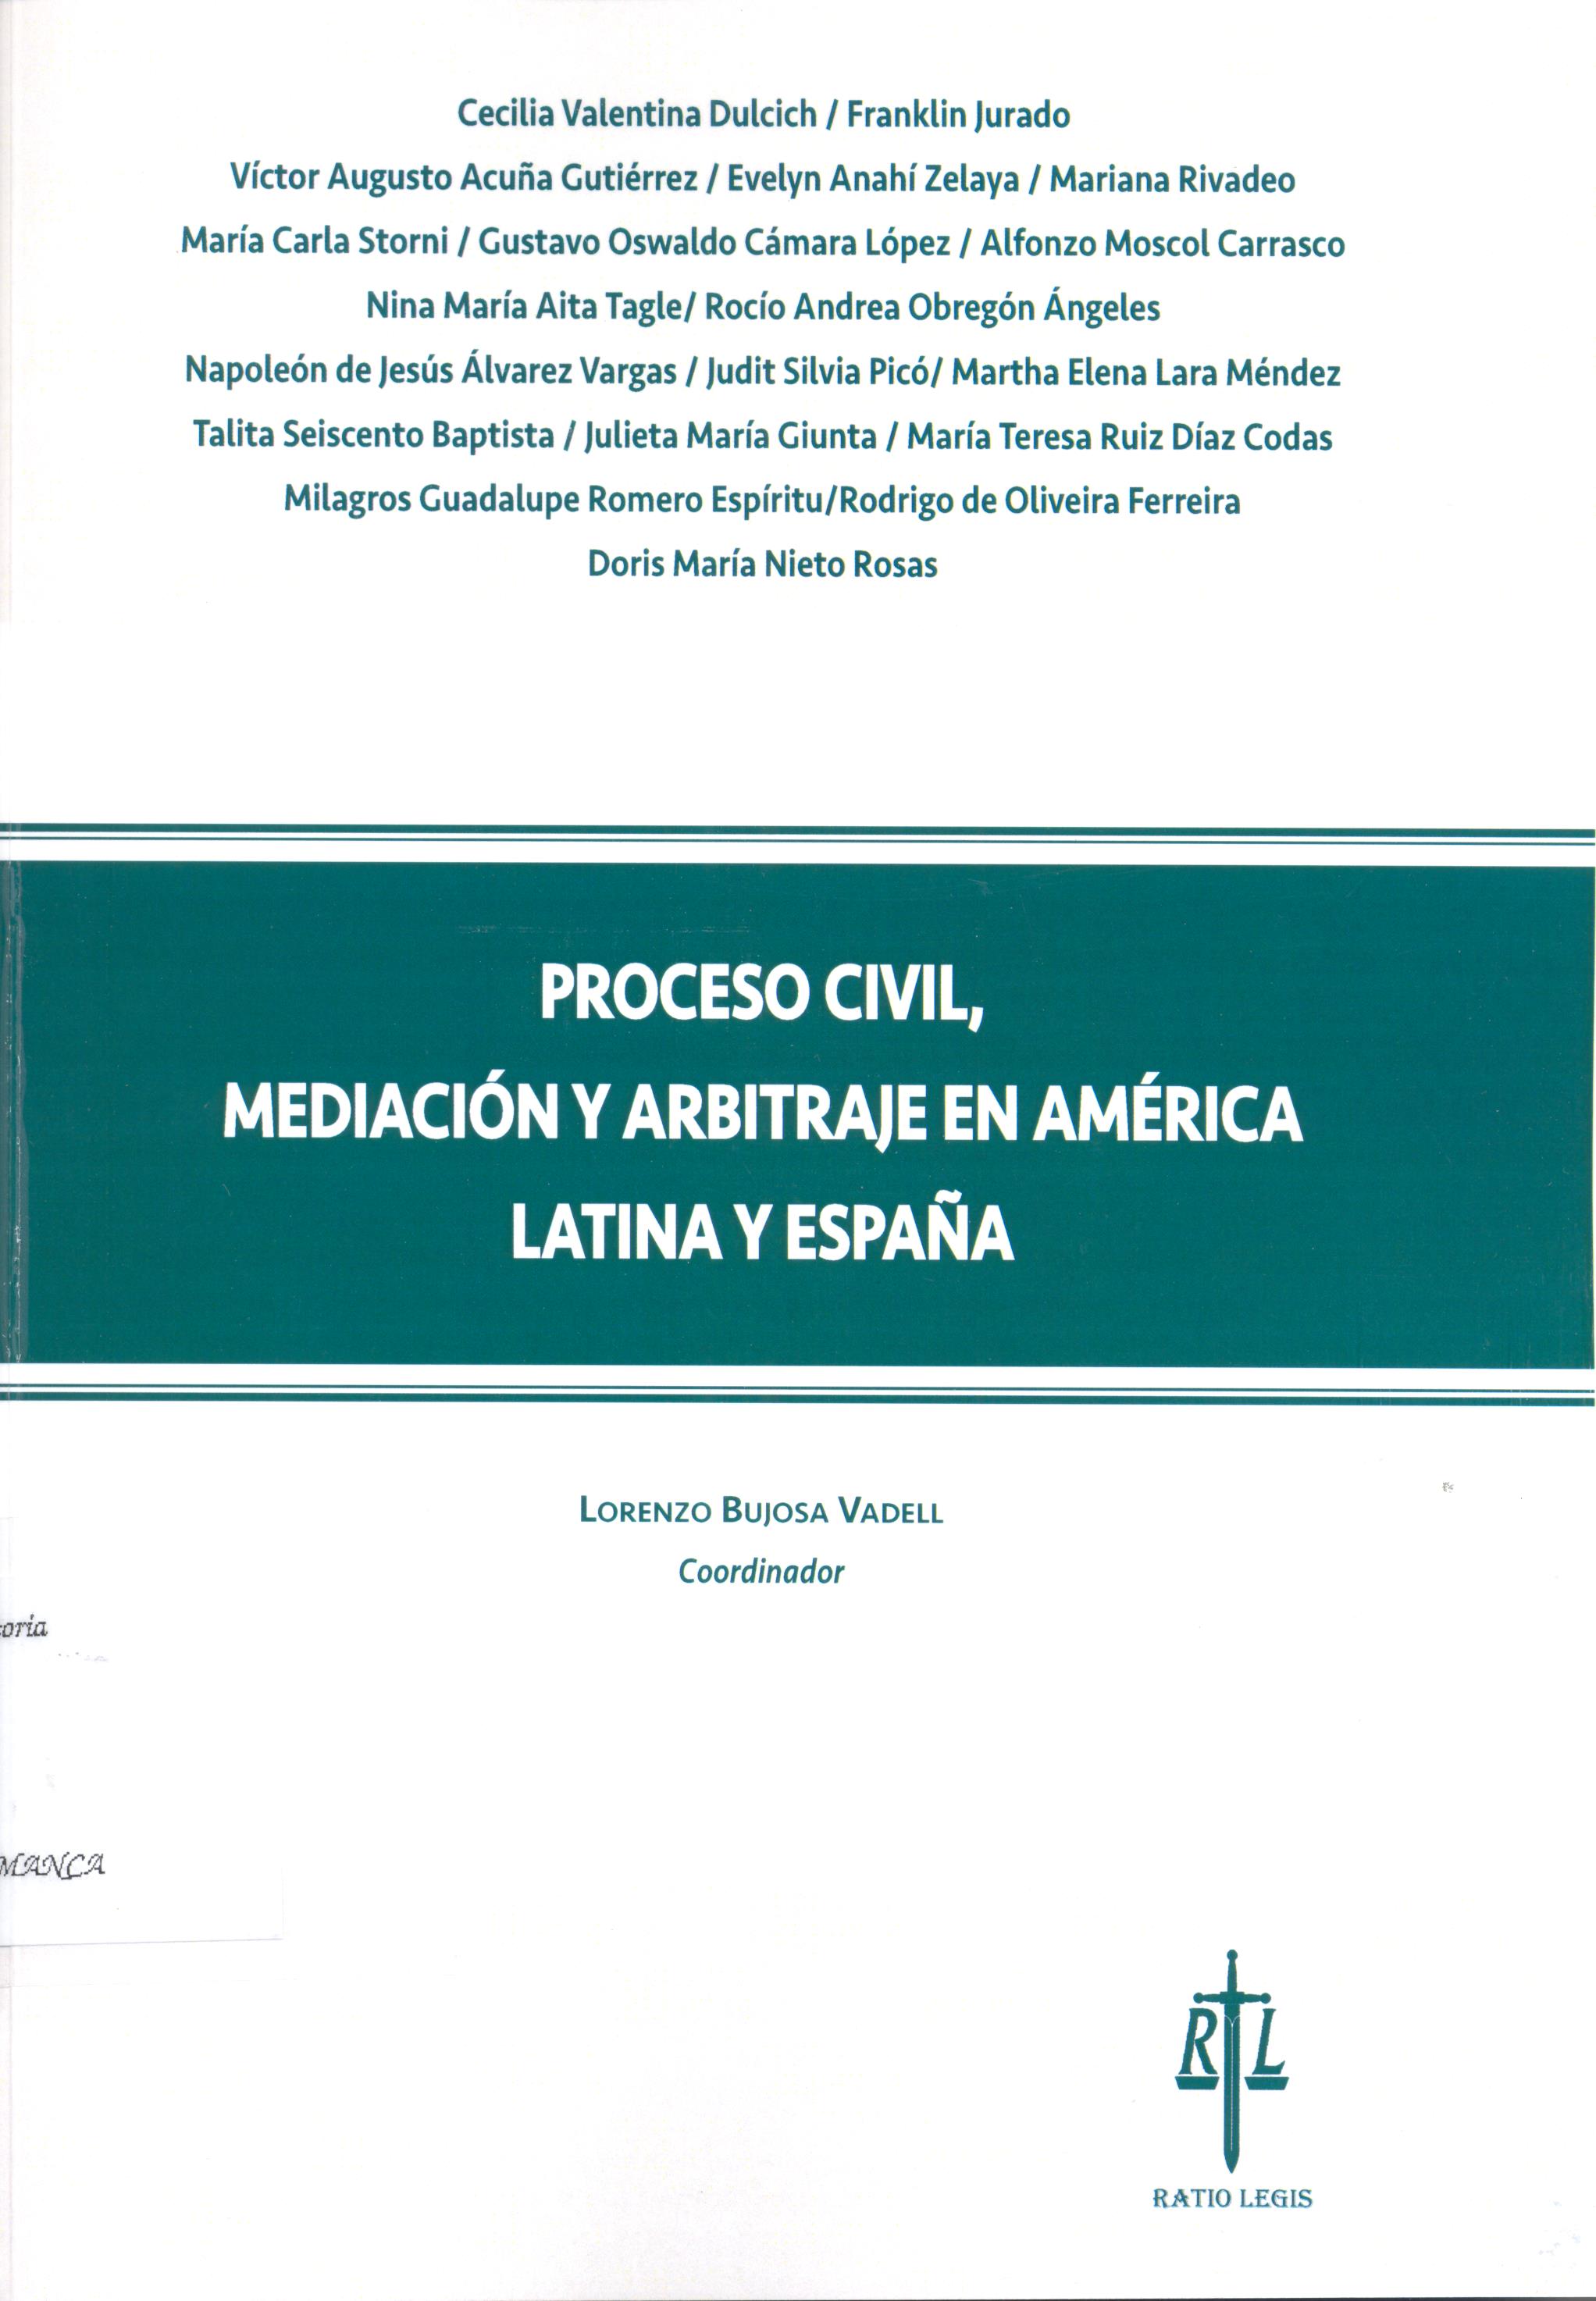 Imagen de portada del libro Proceso civil, mediación y arbitraje en América Latina y España